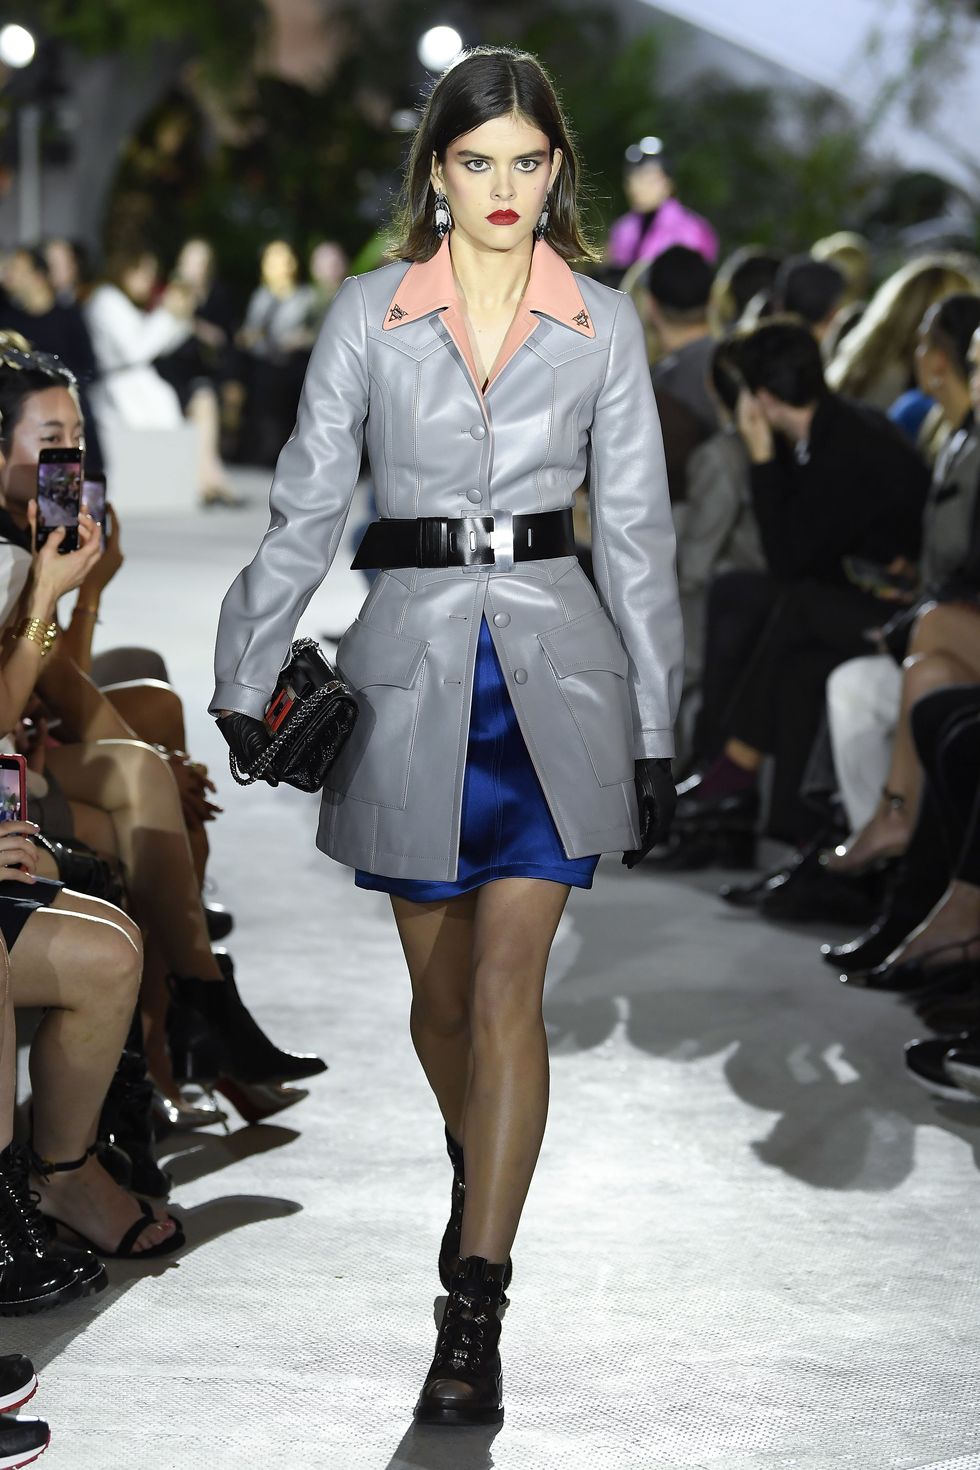 MANIFESTO - TAKING OFF: Louis Vuitton Women's Cruise 2020 Fashion